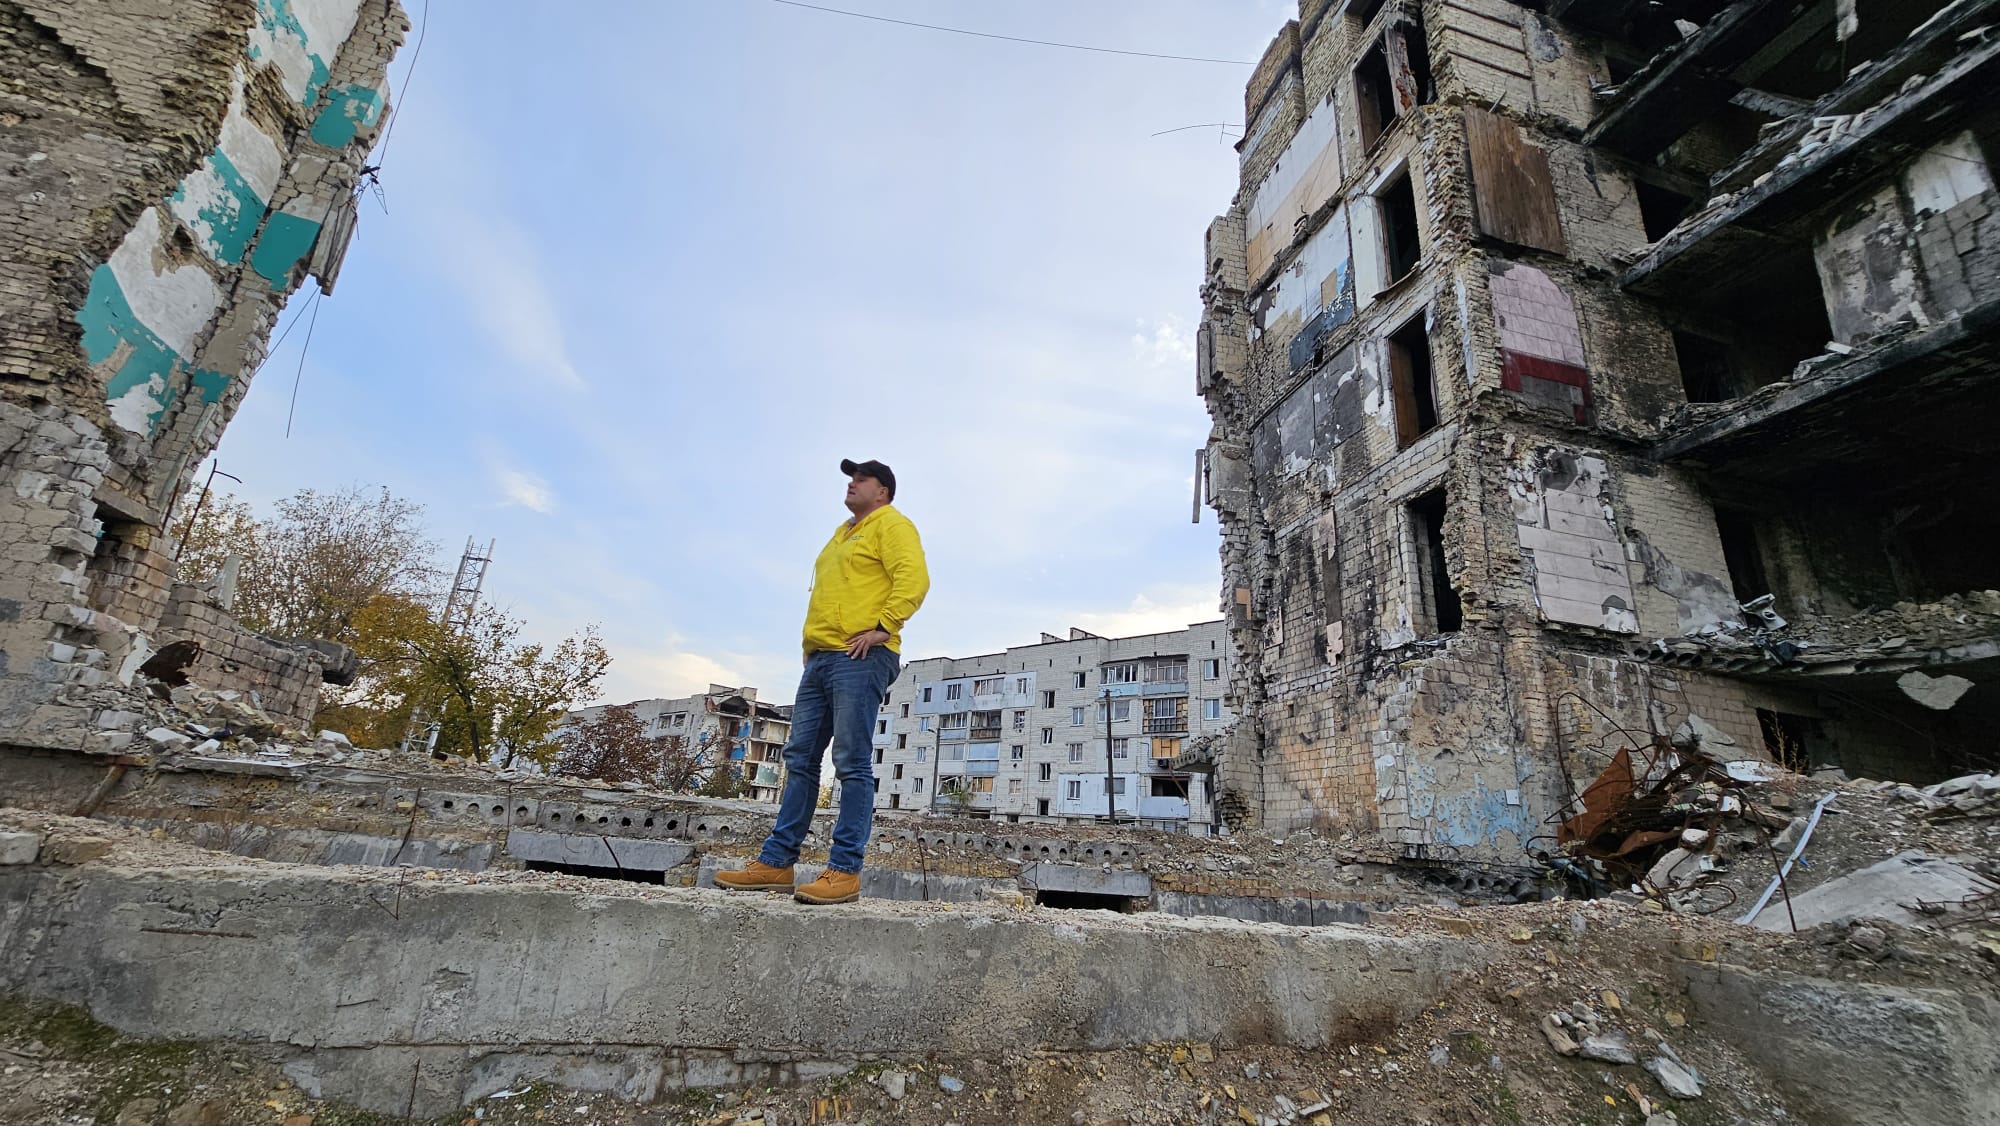 Man stands between two derelict buildings in Ukraine